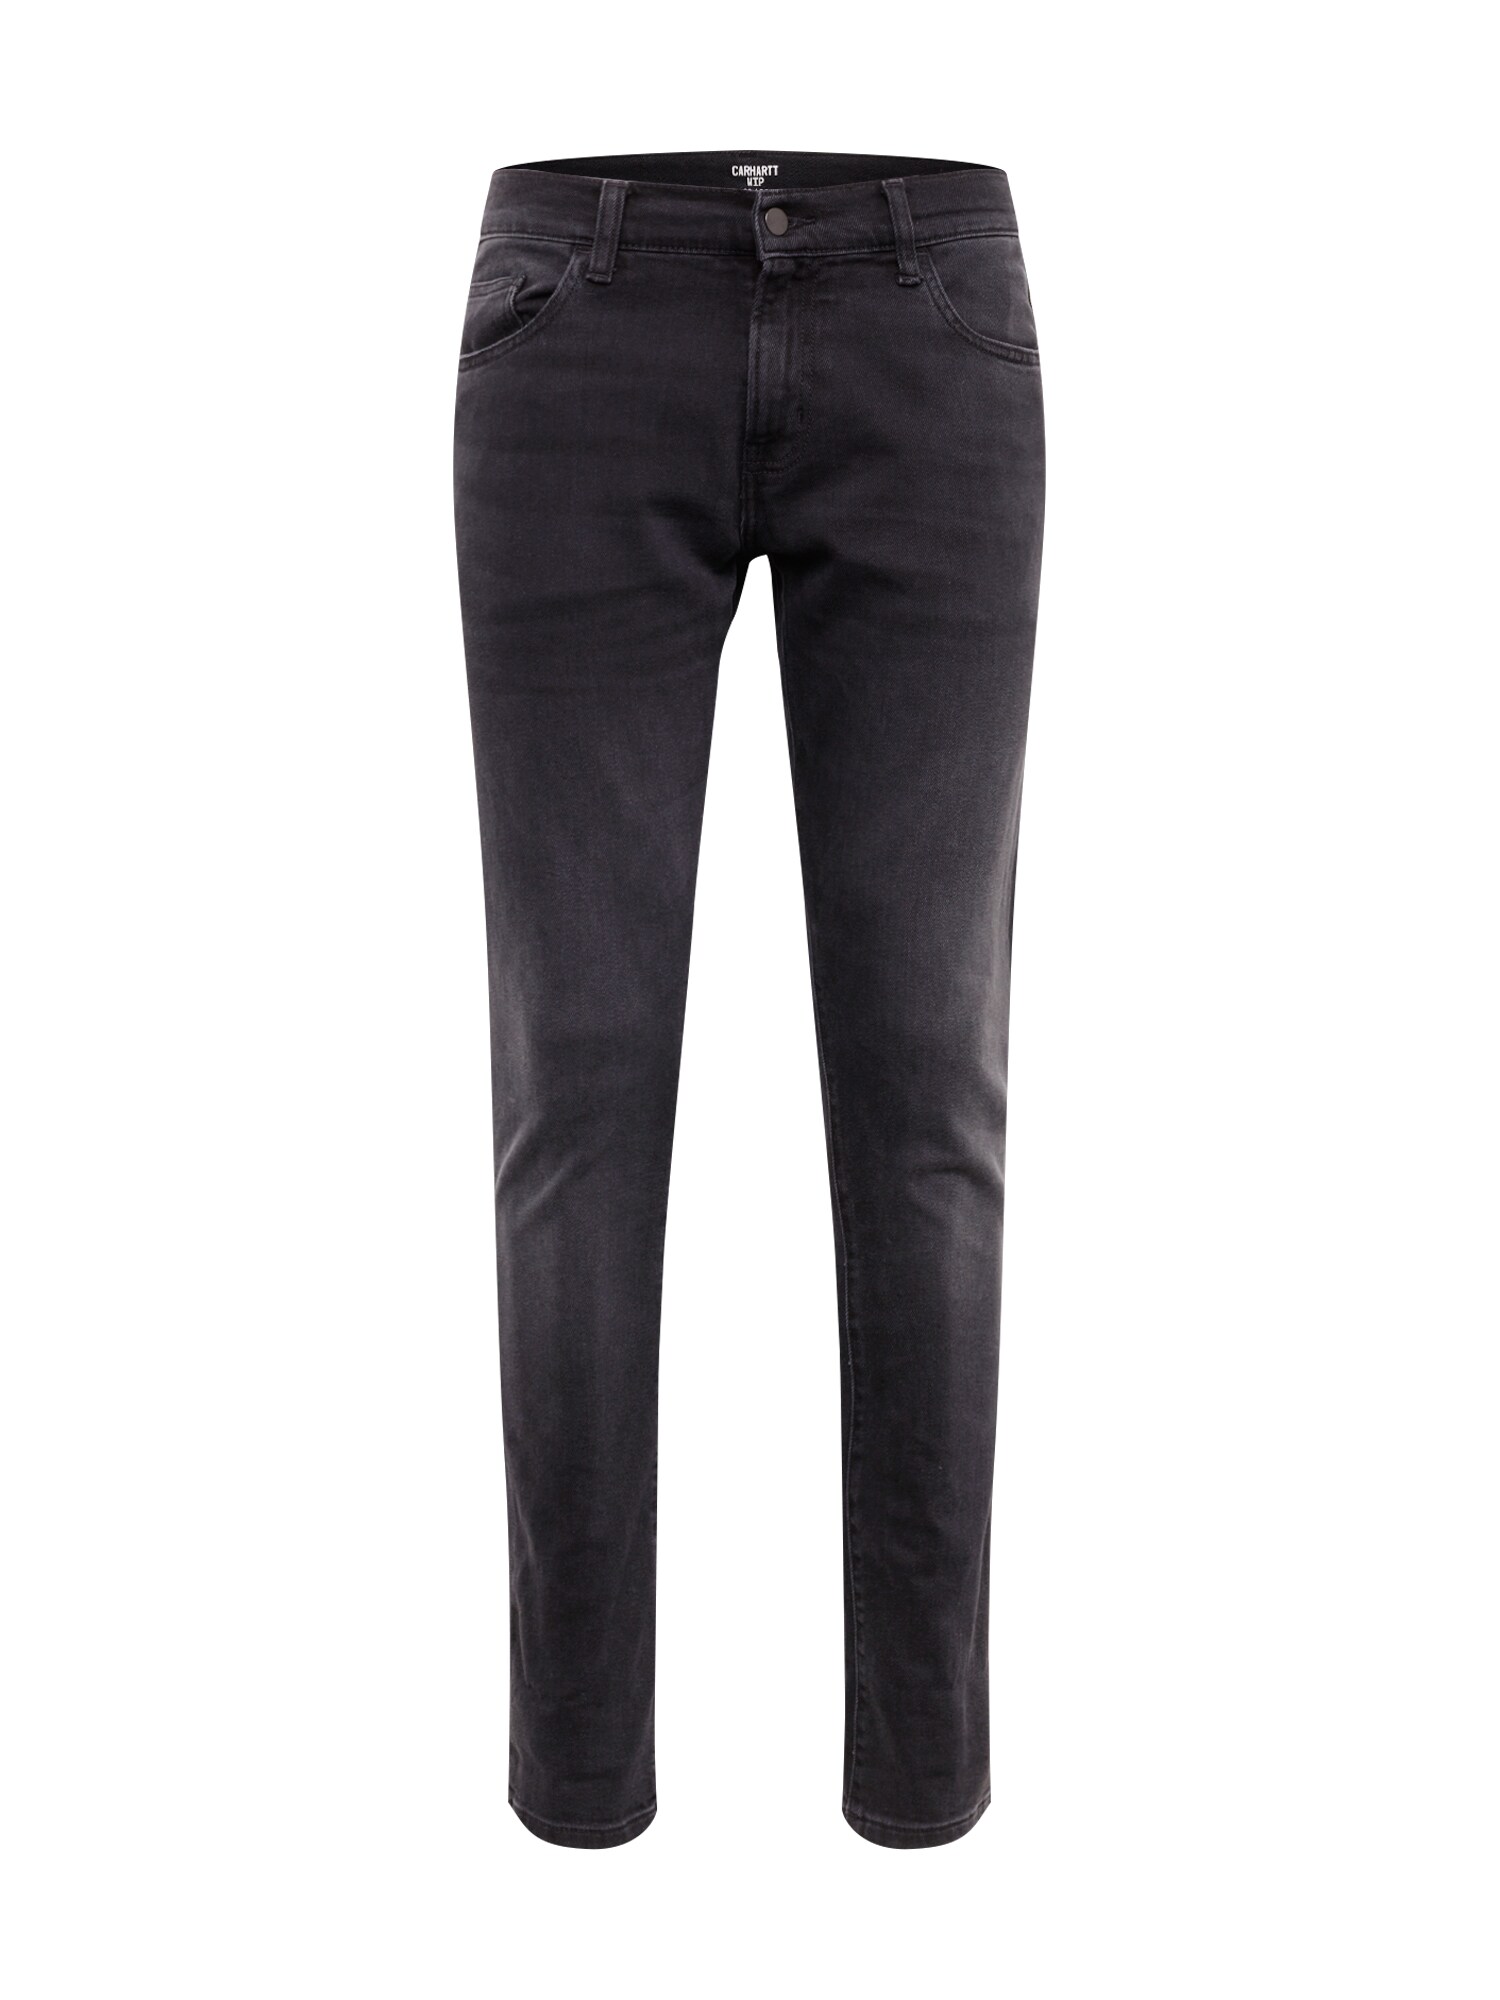 Carhartt WIP Džinsai 'Rebel Pant'  juodo džinso spalva